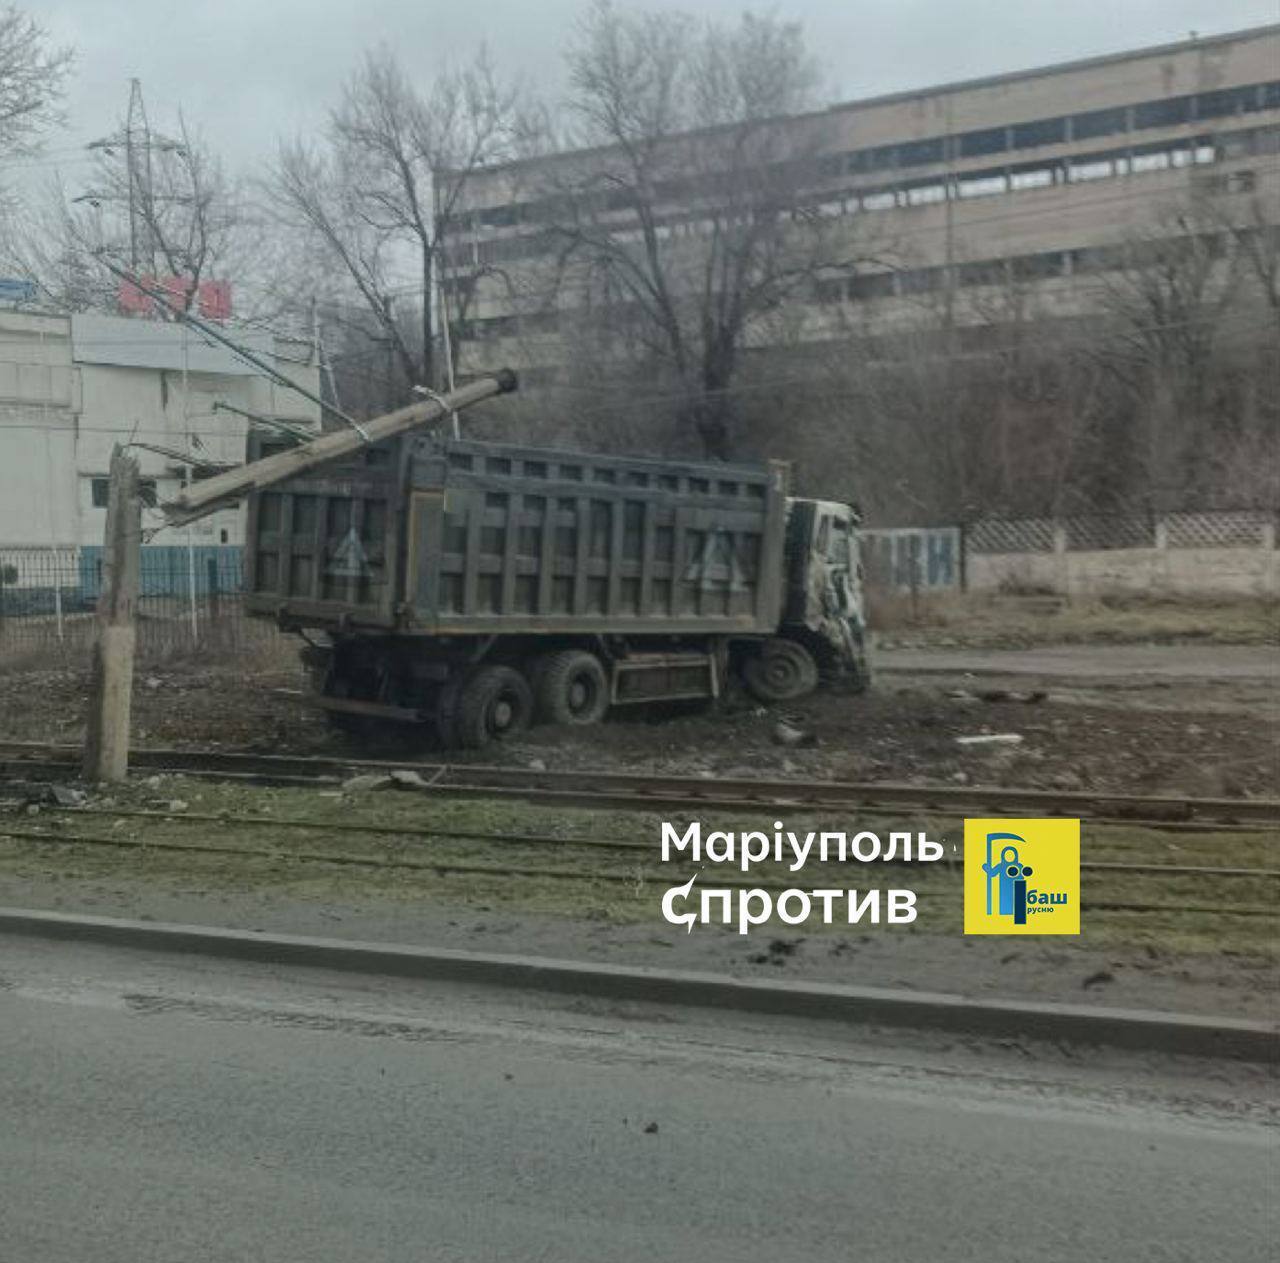 "Бавовна" вдалася: у Маріуполі партизани знешкодили військову вантажівку окупантів. Фото і відео